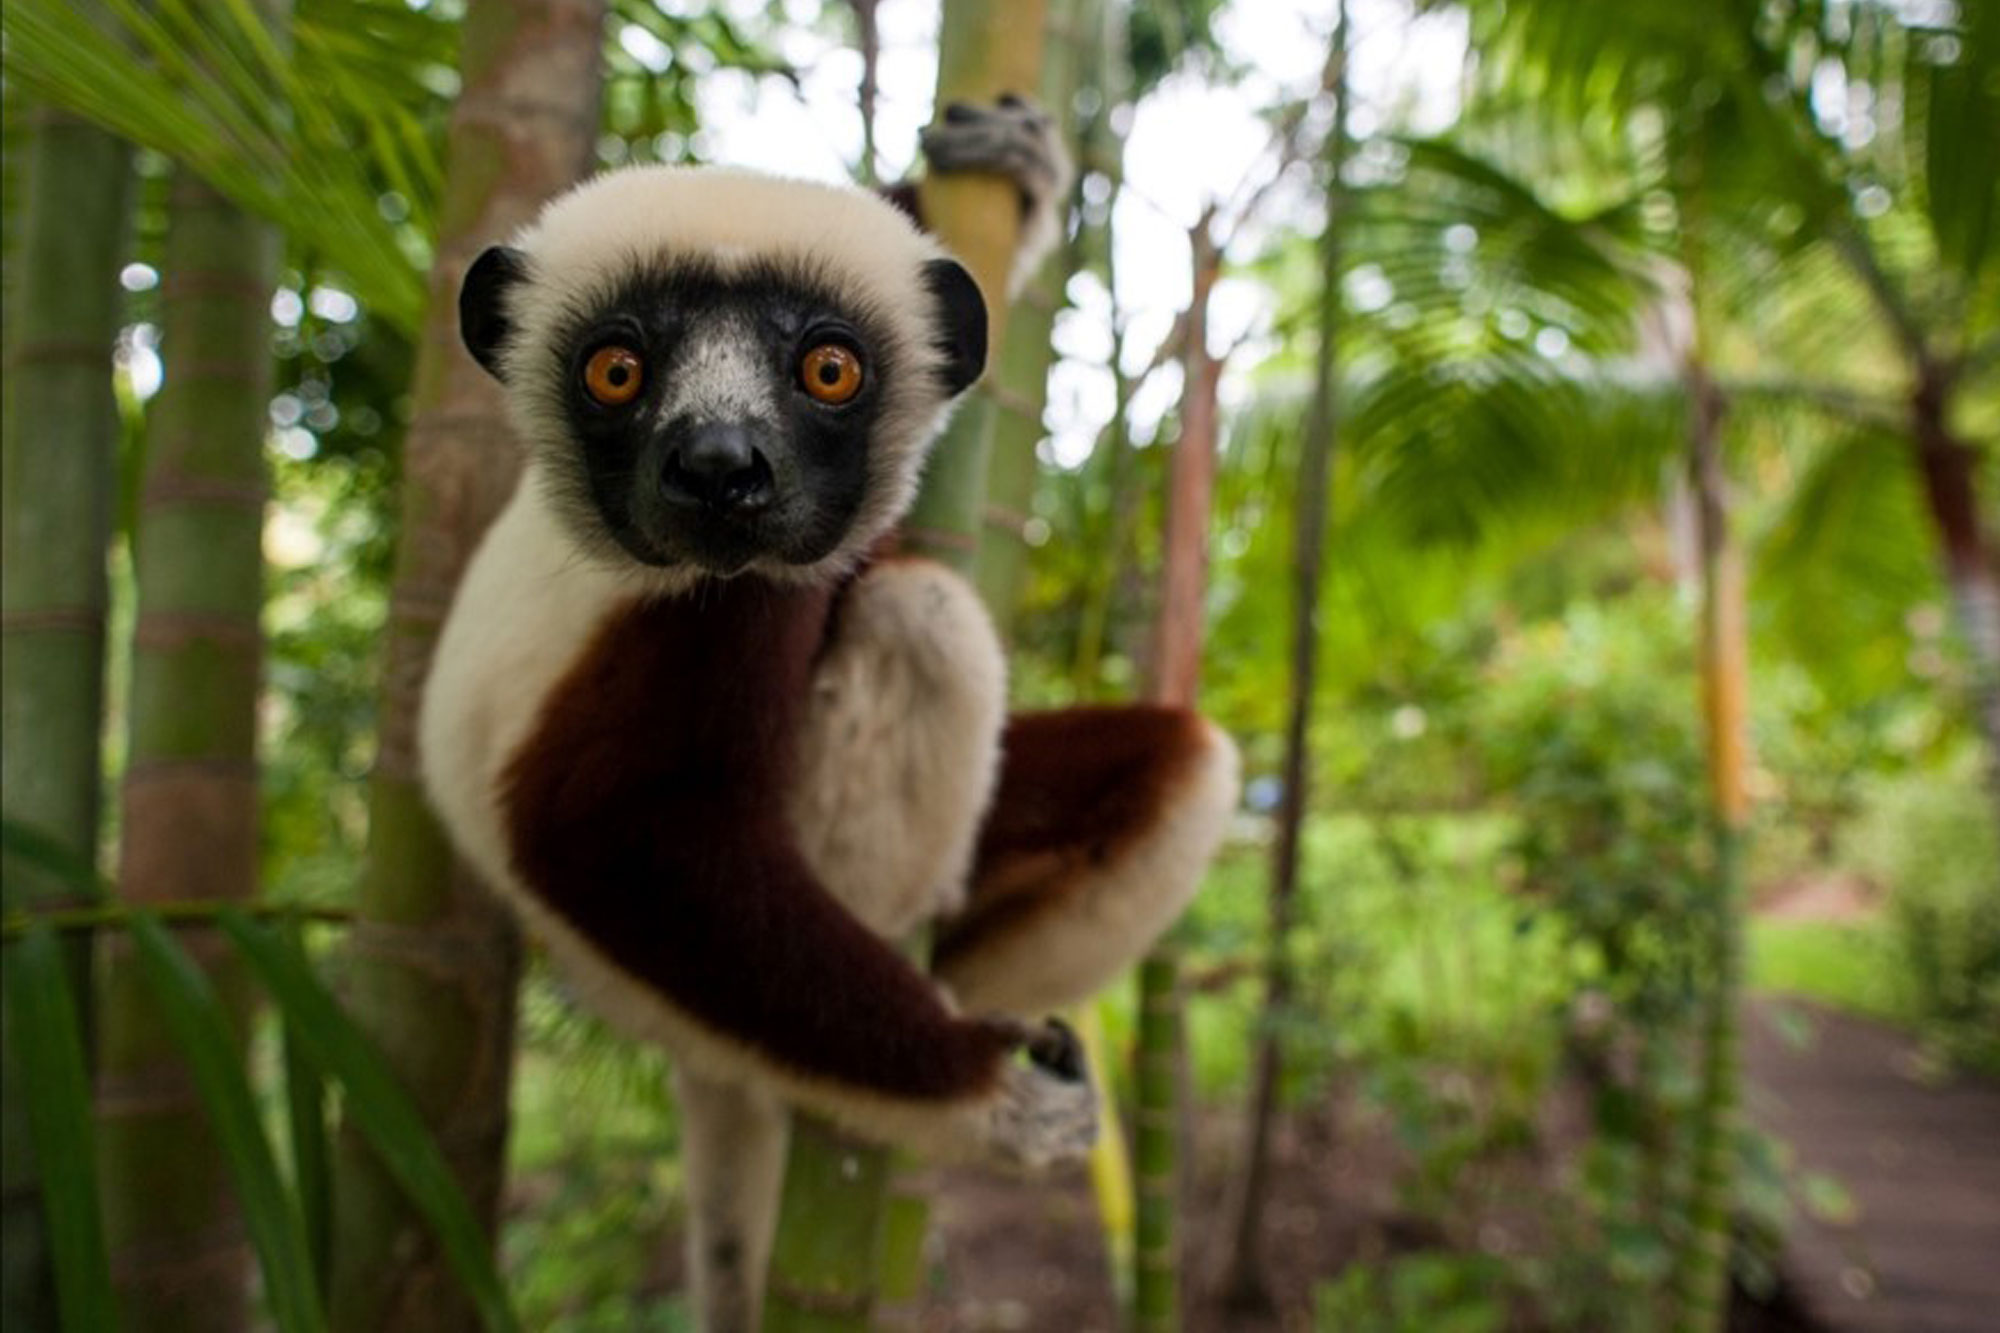 Madagascan lemur